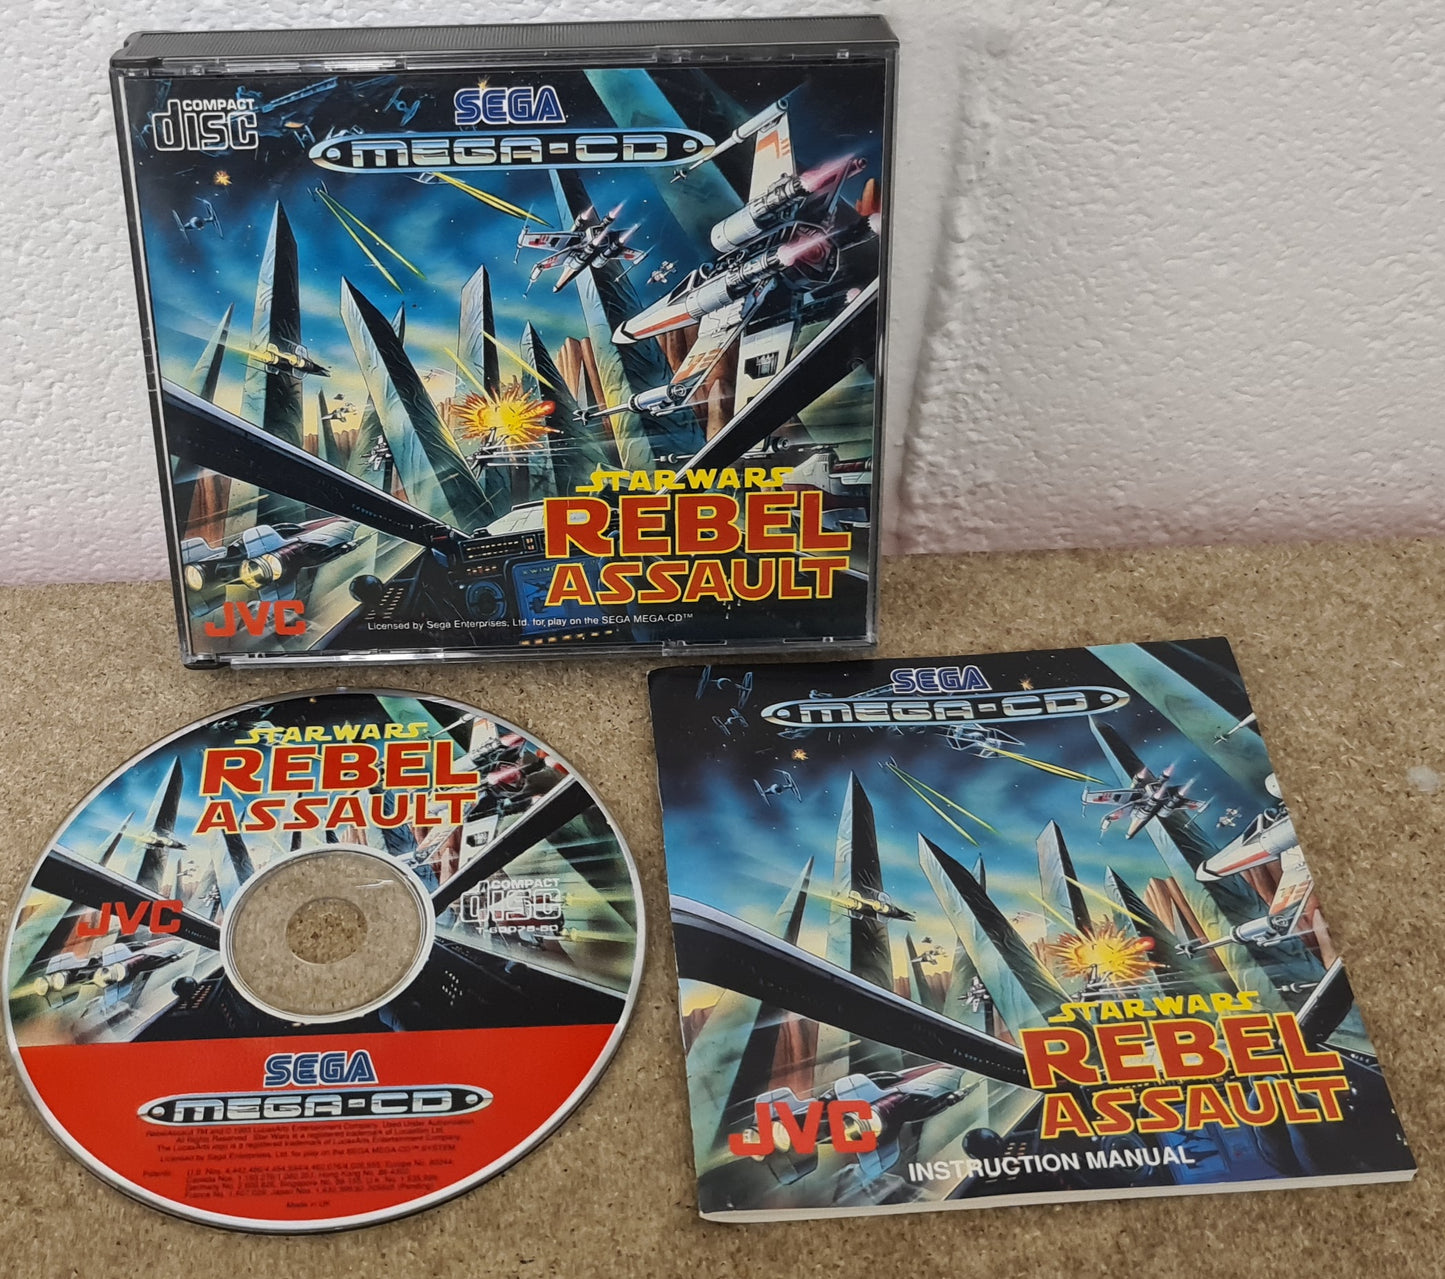 Star Wars Rebel Assault Sega Mega CD Game